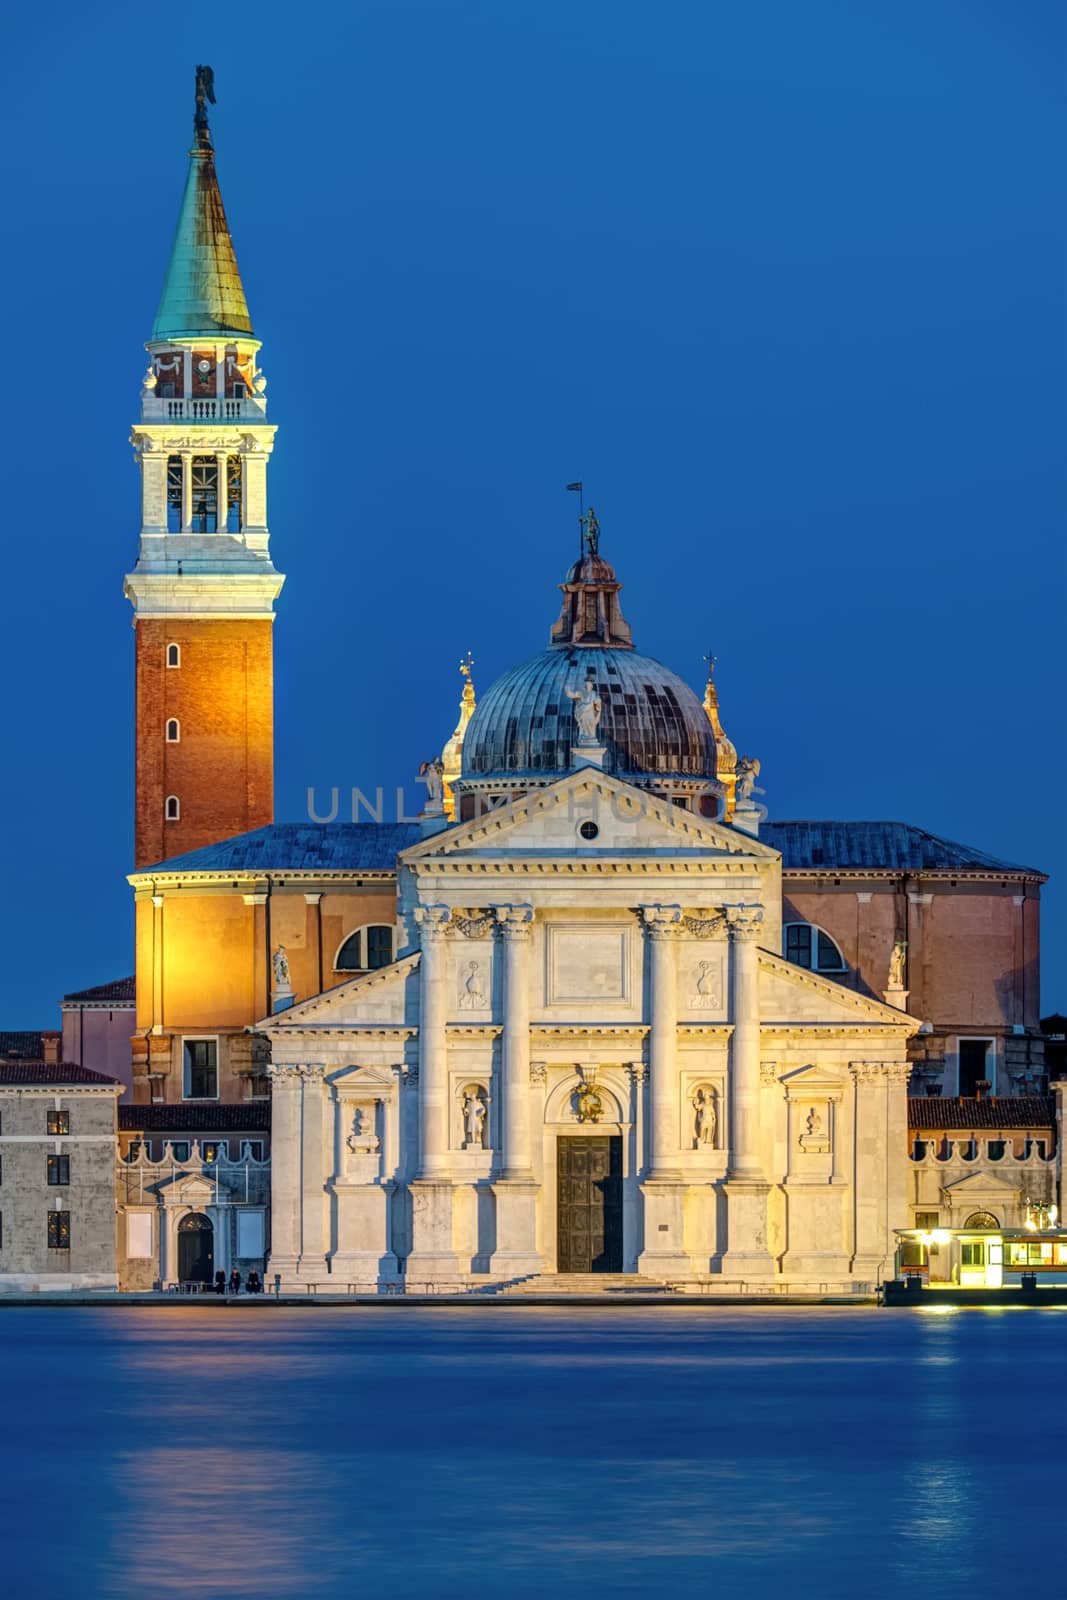 The San Giorgio Maggiore church in Venice, Italy, at night